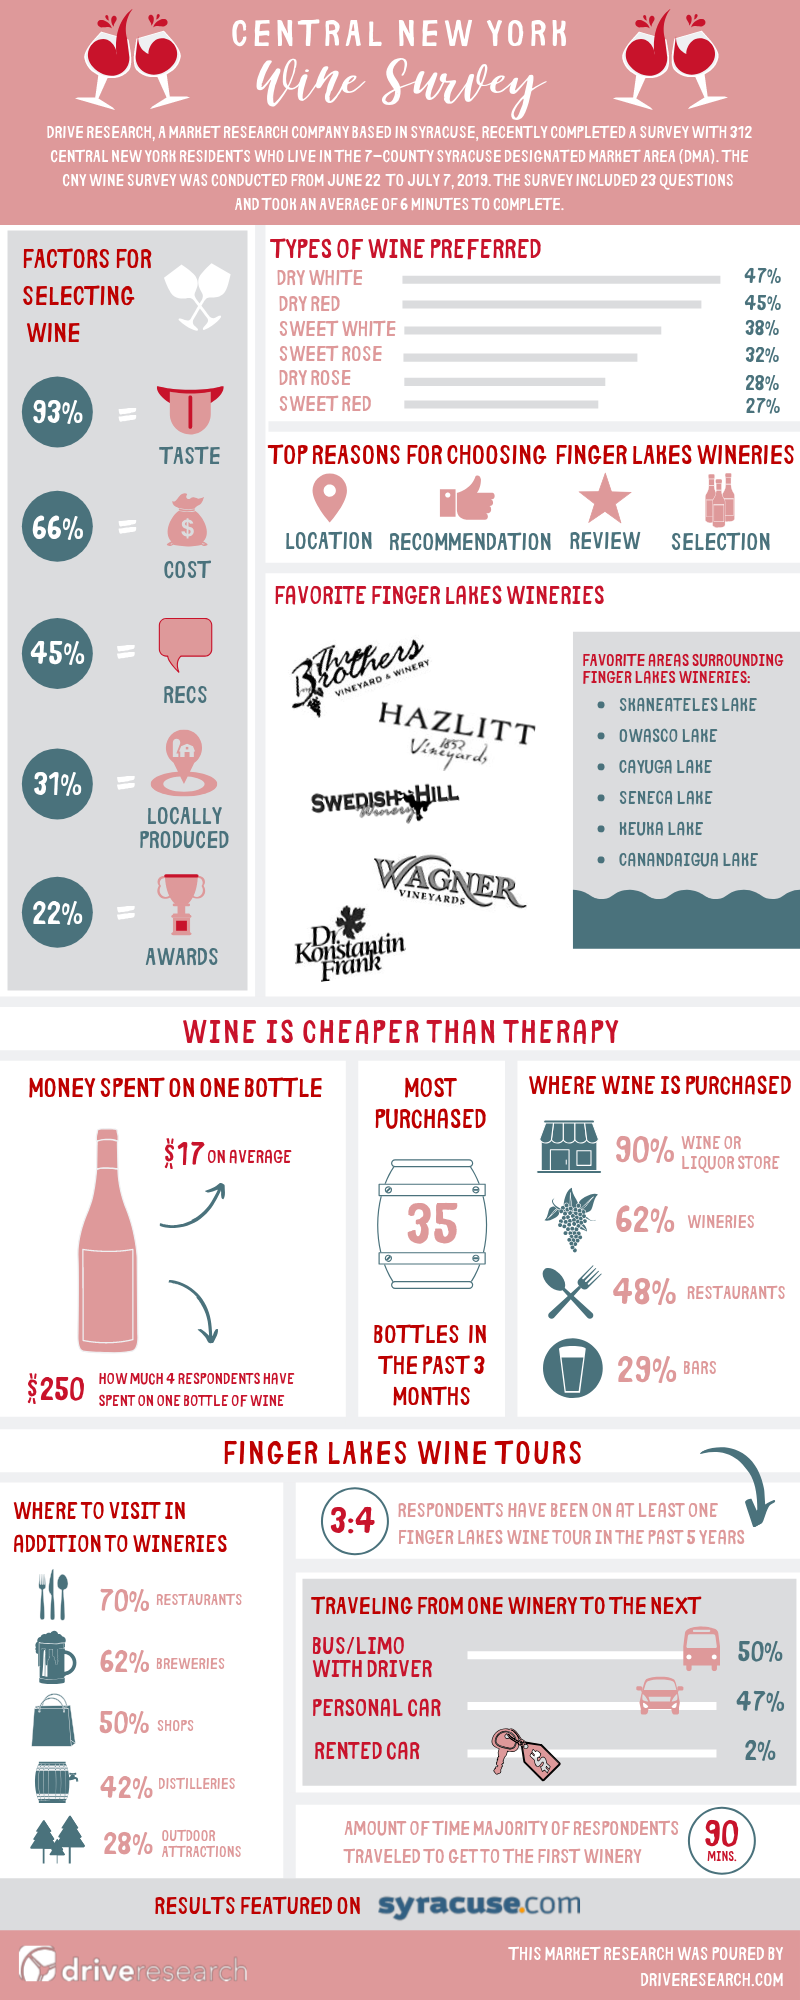 CNY wine survey infographic